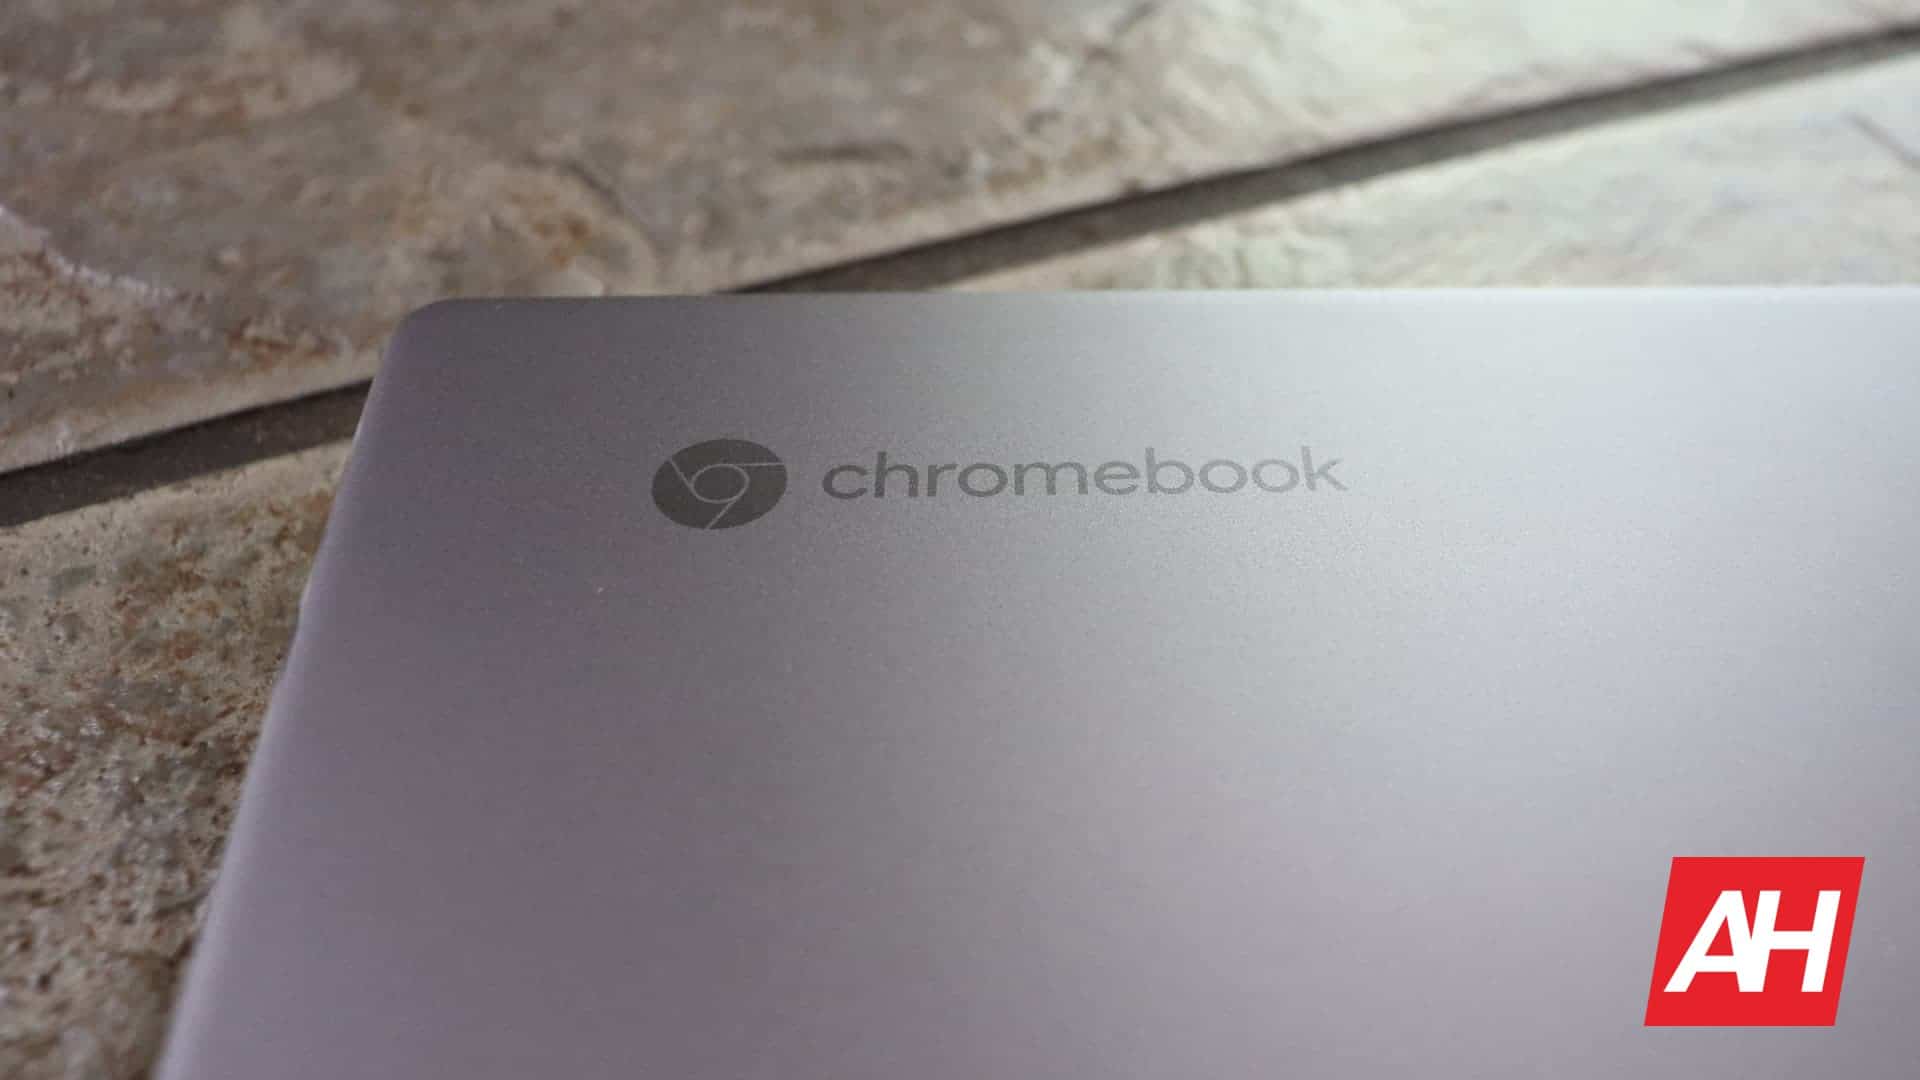 Телефон Hub Привносит в Chromebook совершенно неожиданные функции